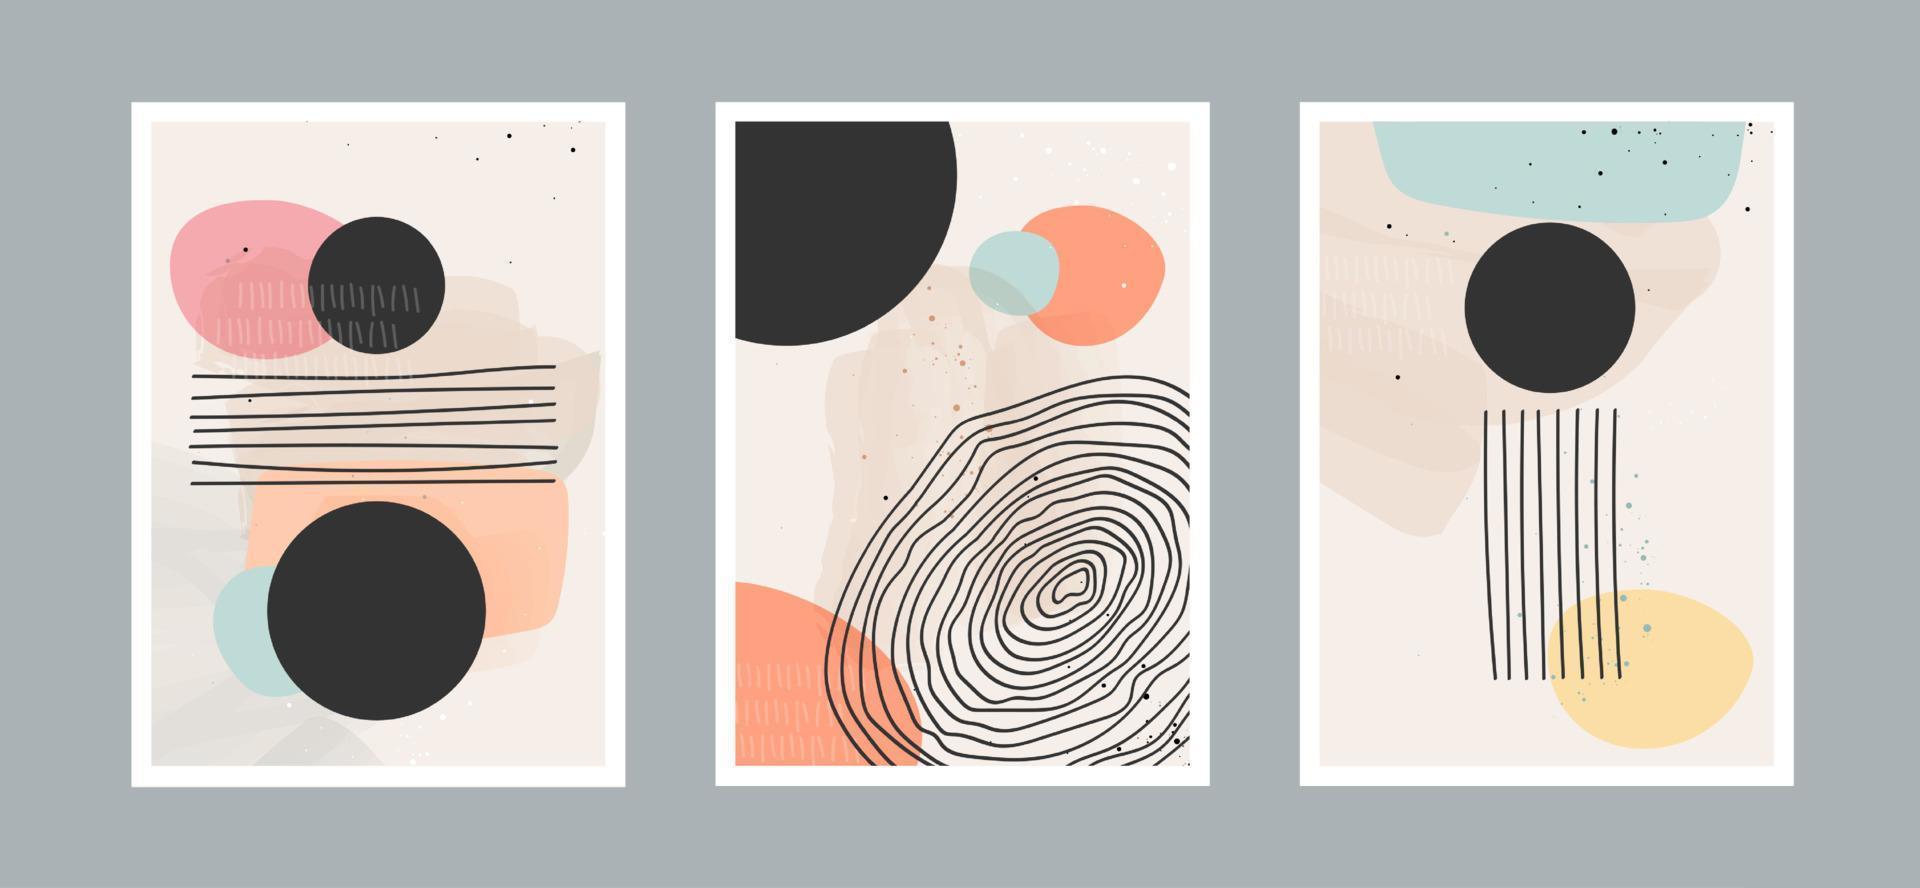 abstrakt konstbakgrund med olika former för väggdekoration, vykort eller broschyromslagsdesign. vektor illustrationer design